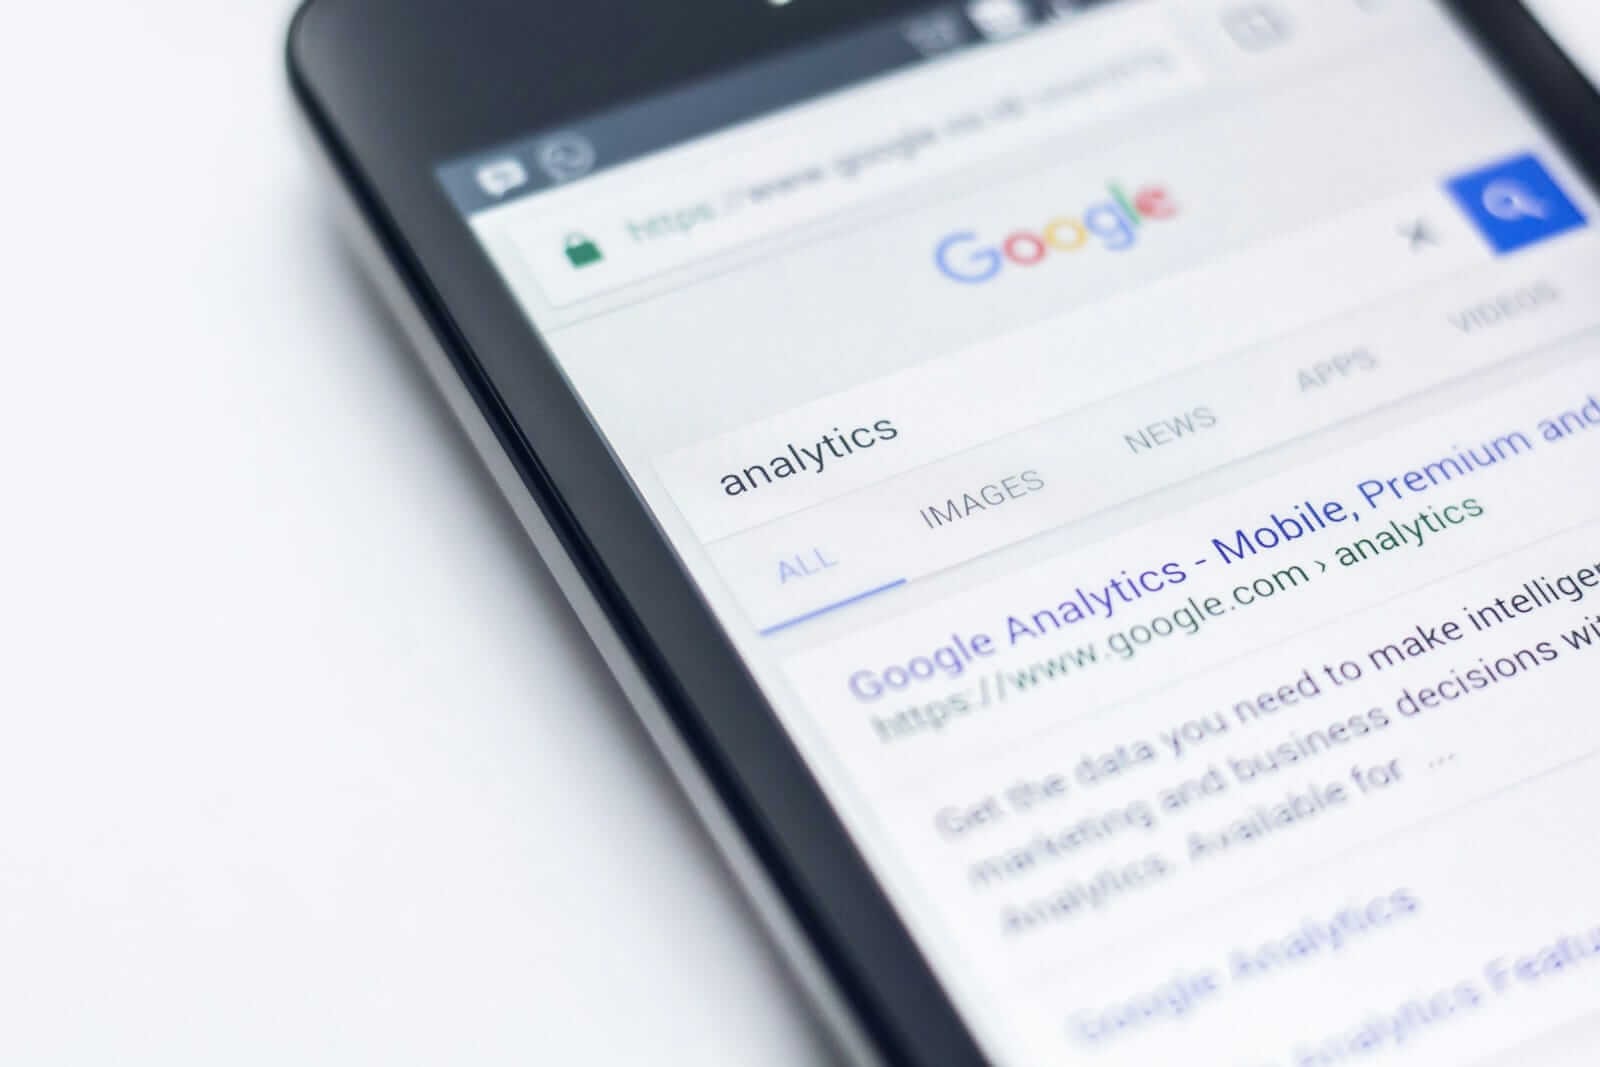 Google-Suche nach Analytics auf Smartphone-Bildschirm.